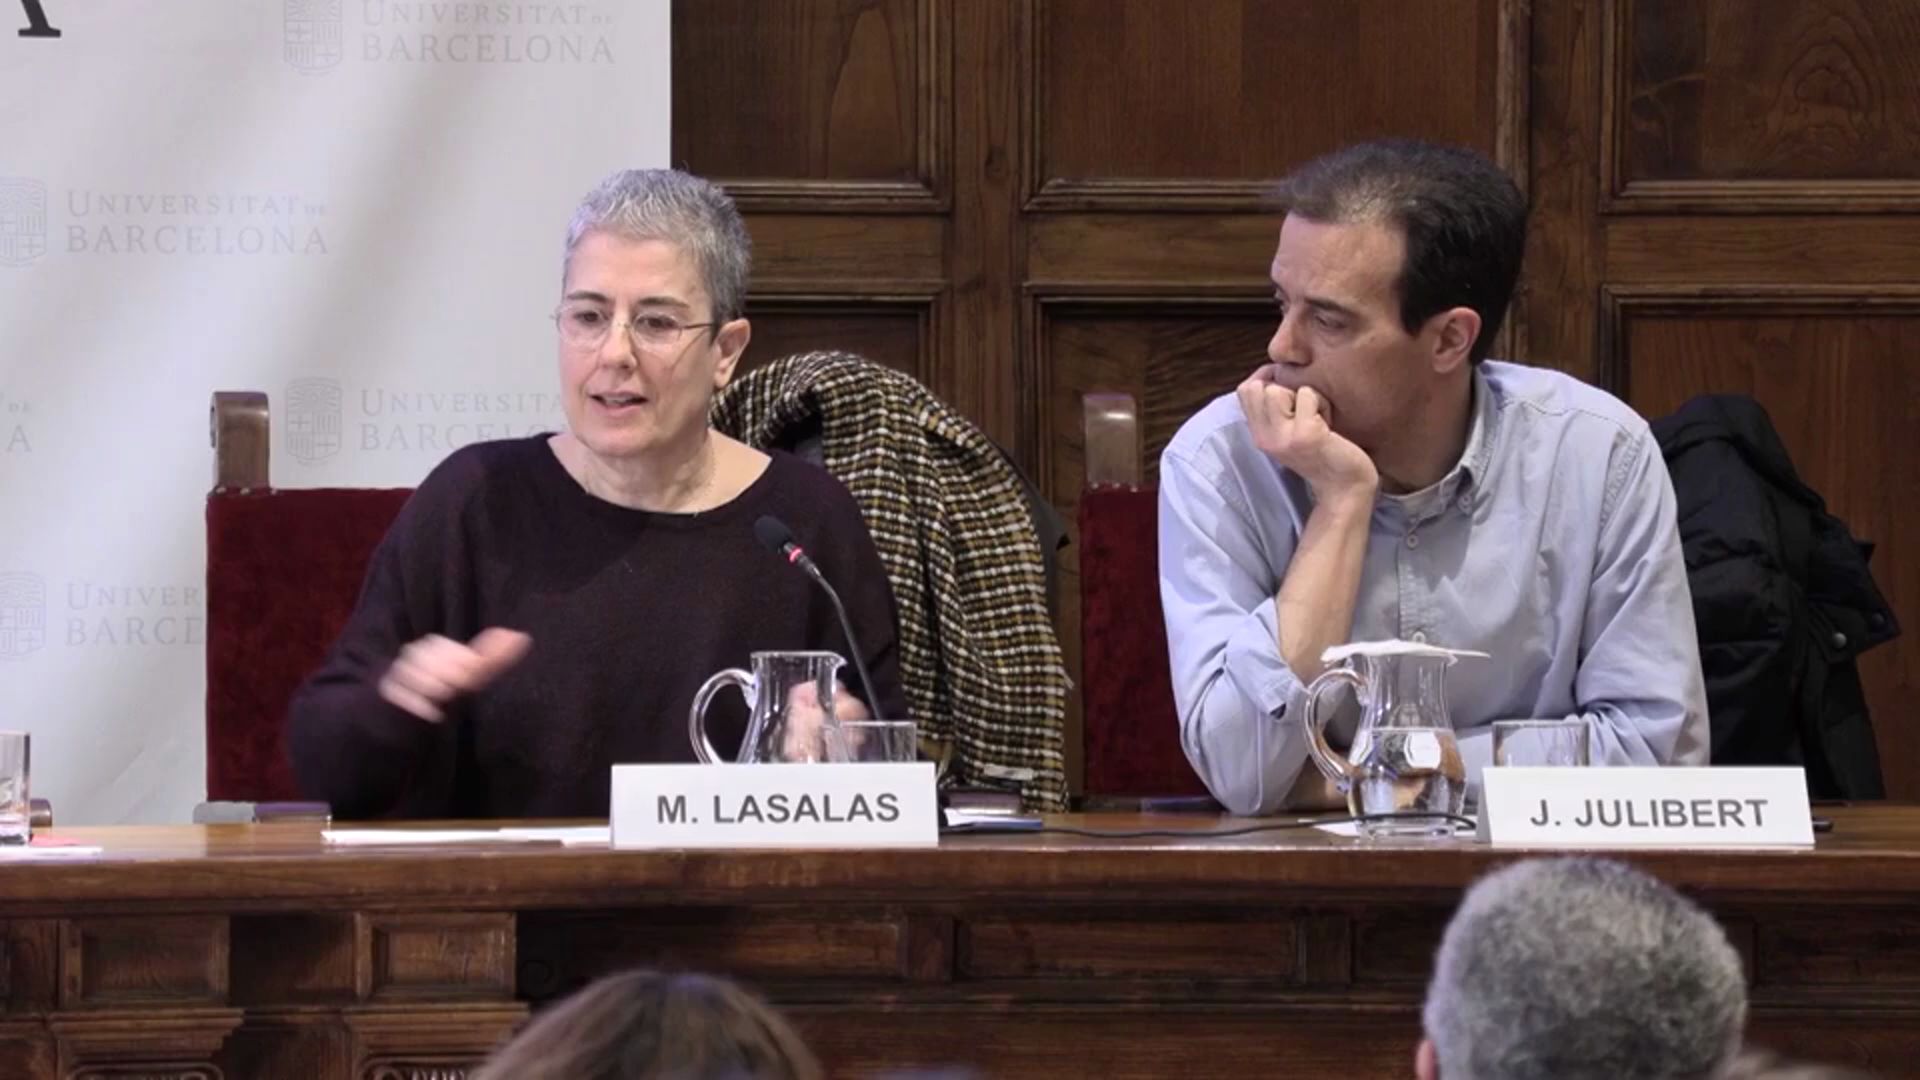 Debats UB: Catalunya i Espanya. El paper dels mitjans davant els reptes de les societats democràtiques